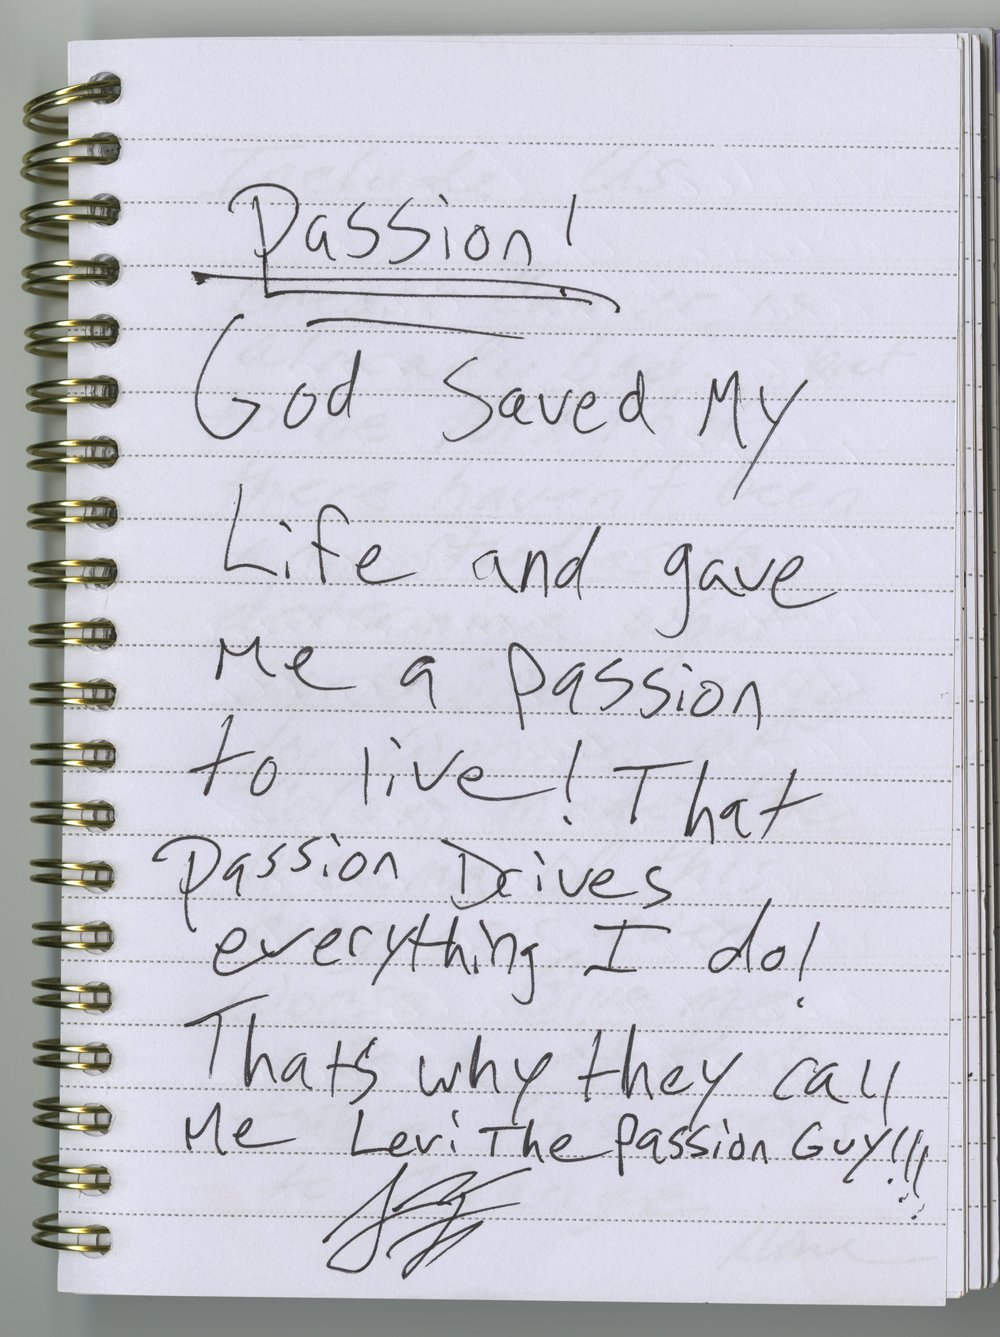 Levi Ferguson's handwritten journal entry.